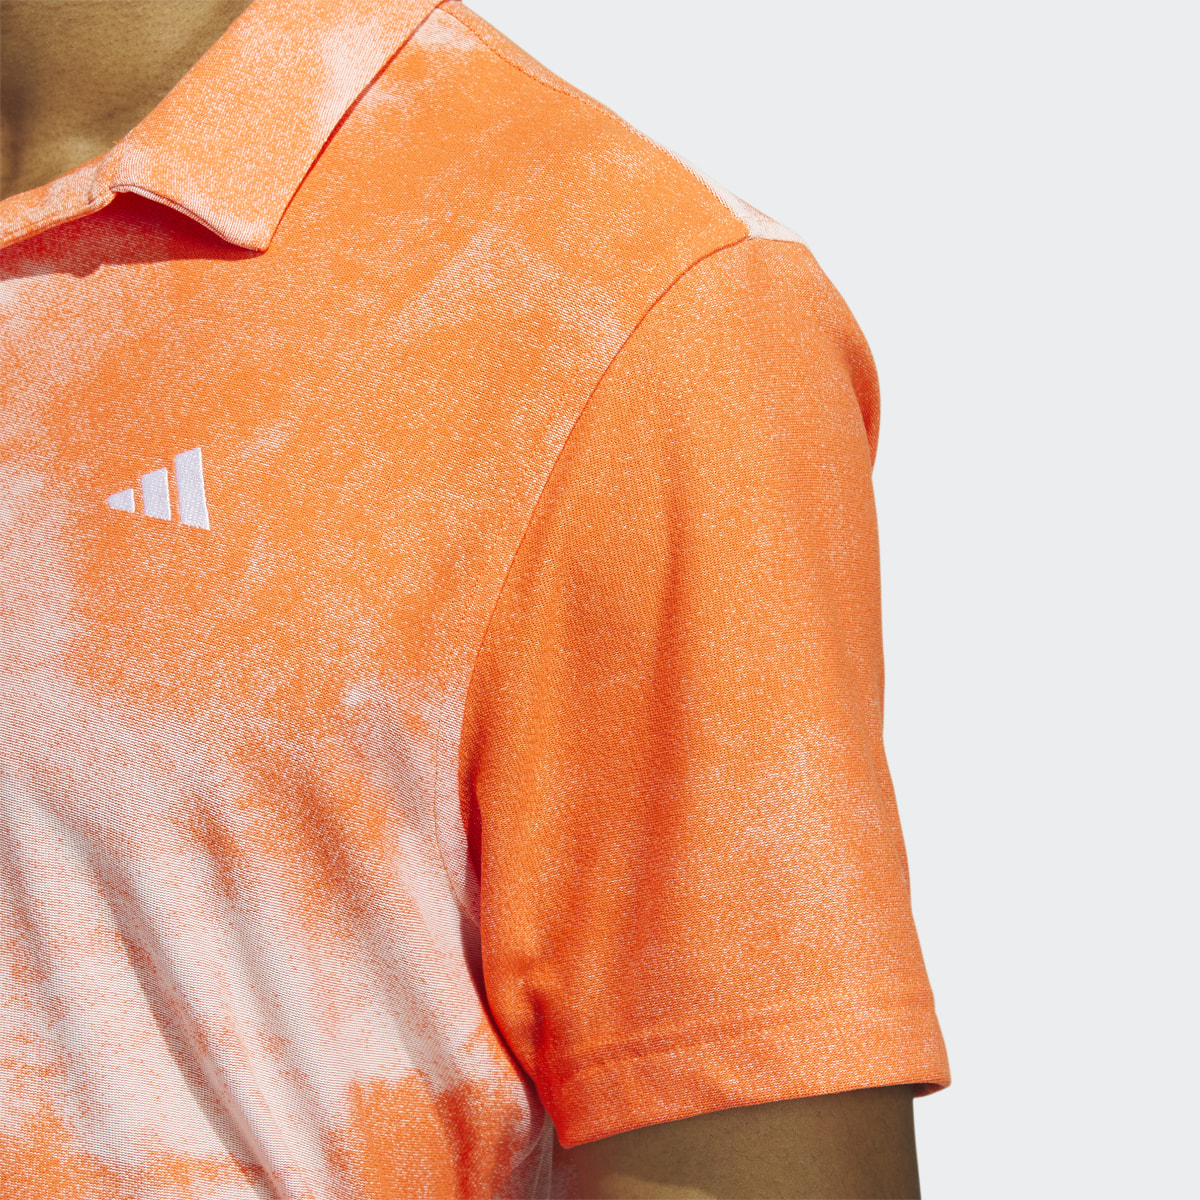 Adidas Made To Be Remade No-Button Jacquard Shirt. 6